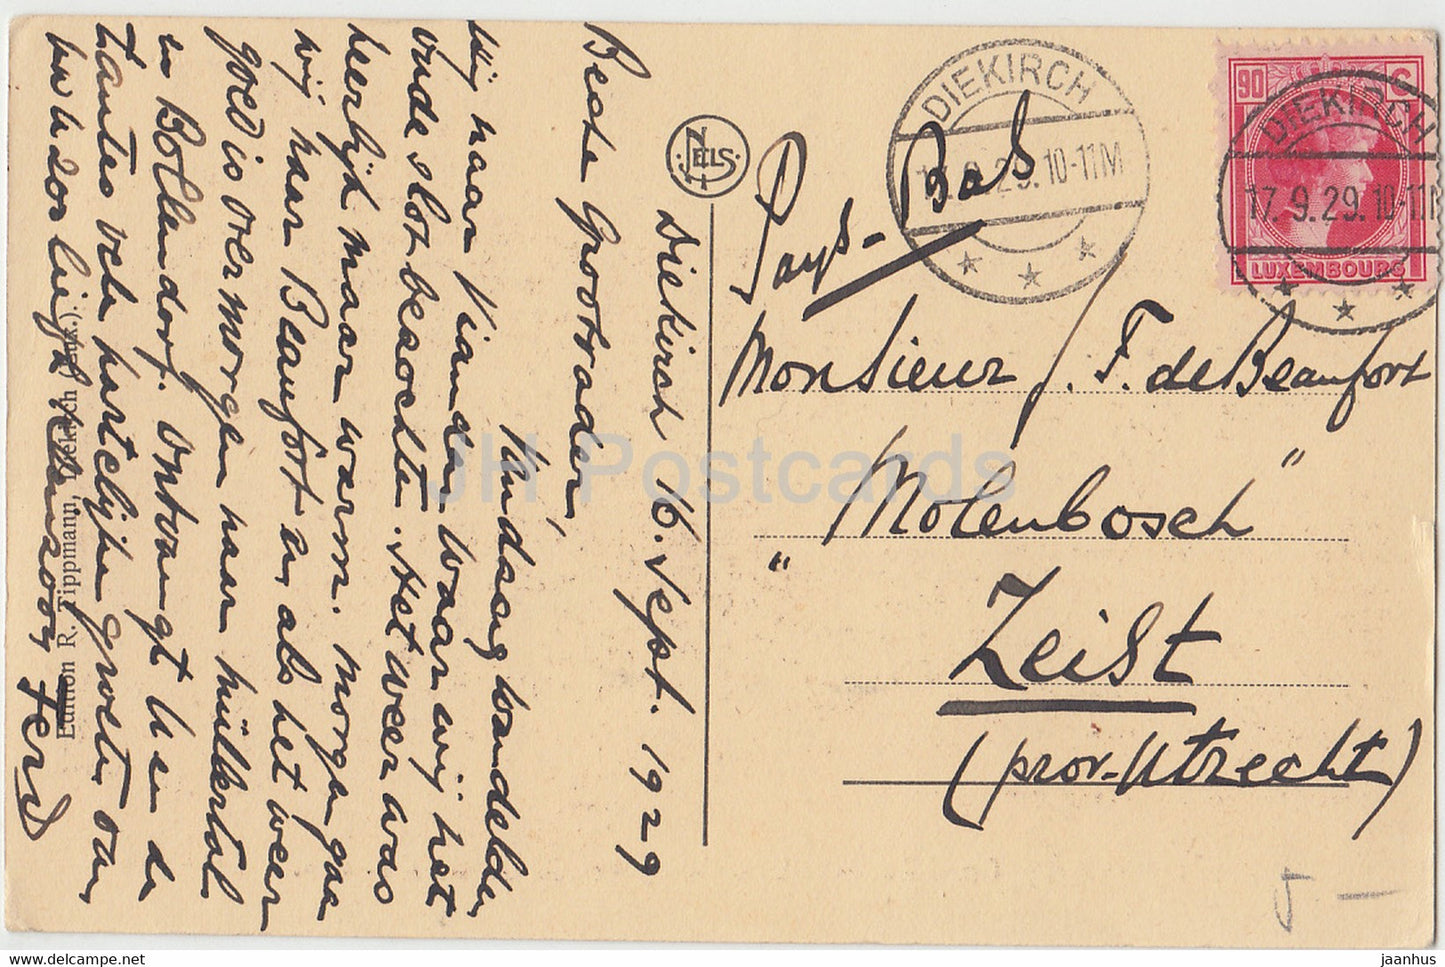 Großherzogtum Luxemburg - Chateau Granducal de Colmar Berg - Schloss - alte Postkarte - 1929 - Luxemburg - gebraucht